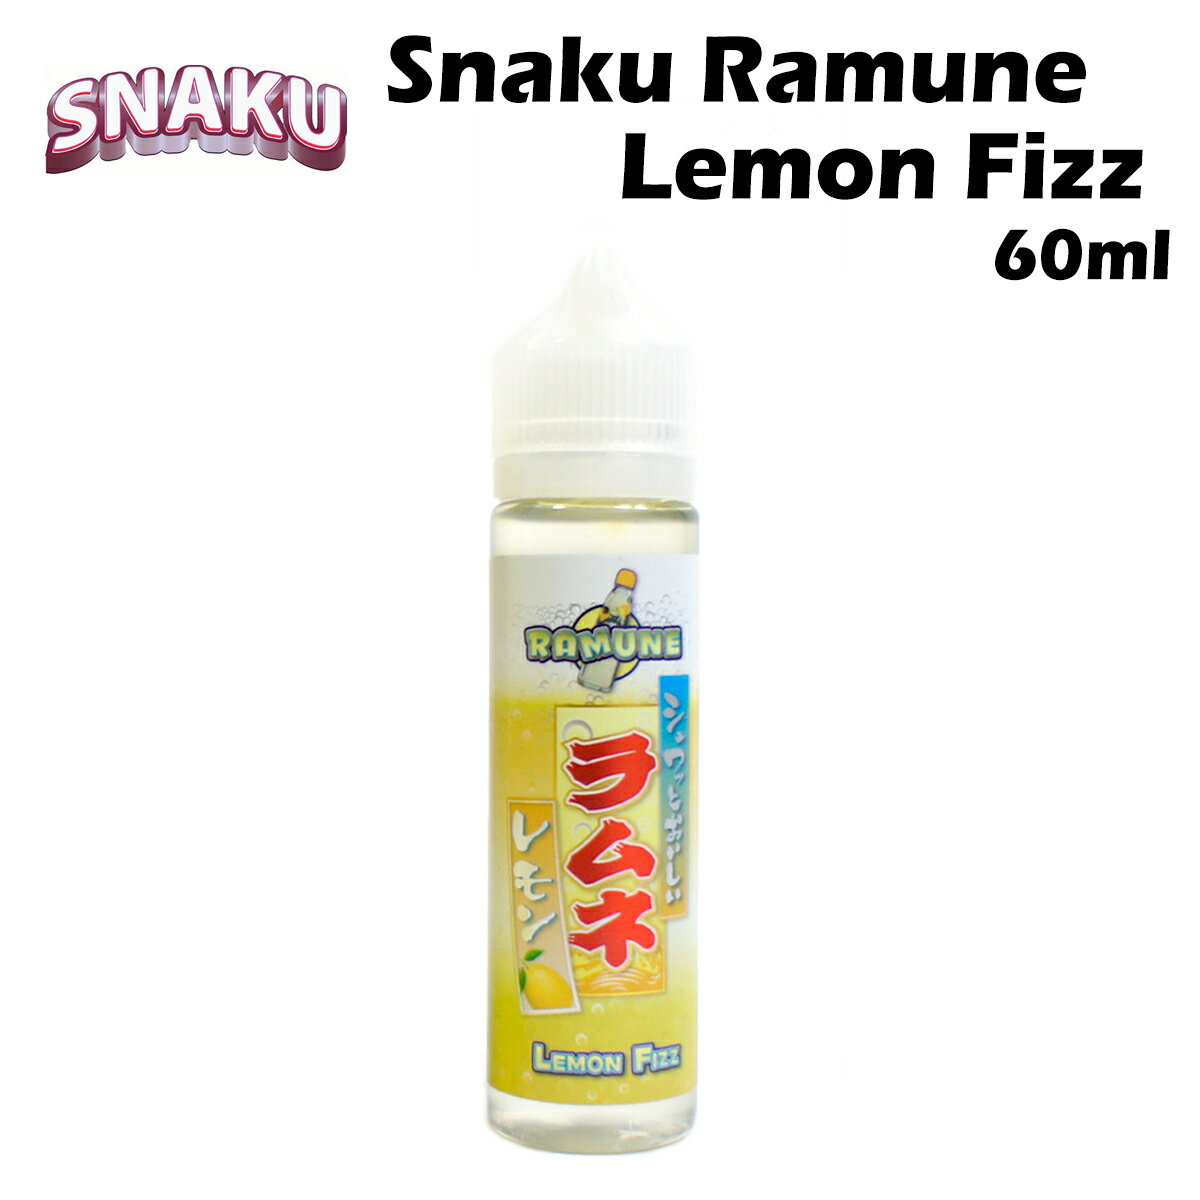 Snaku / Ramune Lemon Fizz 60ml アメリカ産 